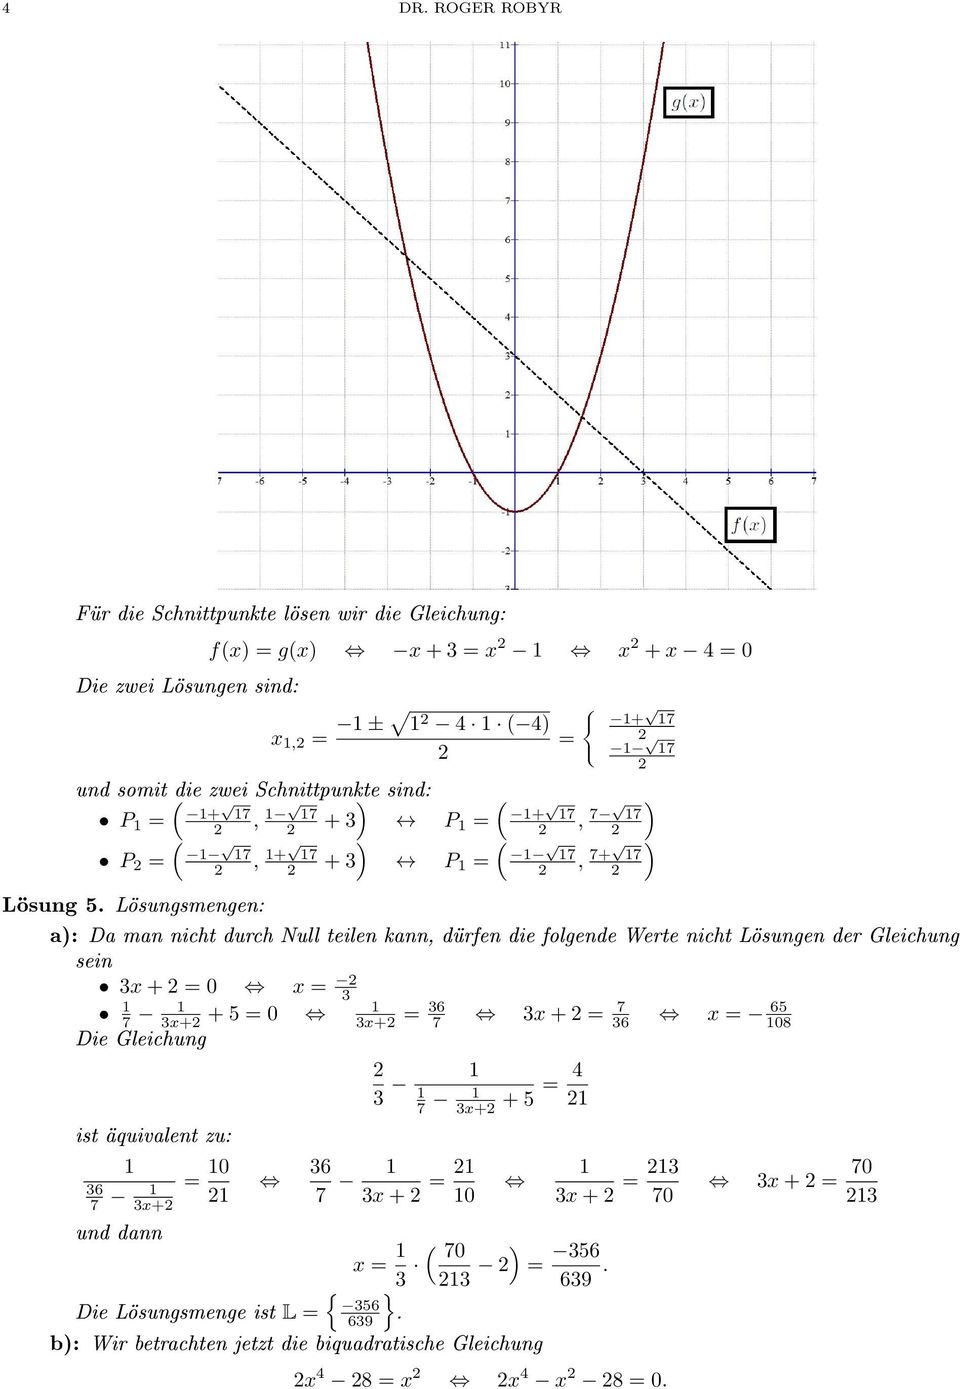 Lösungsmengen: a): Da man nicht durch Null teilen kann, dürfen die folgende Werte nicht Lösungen der Gleichung sein 3x + 0 x 3 7 3x+ + 5 0 3x+ 36 7 3x +